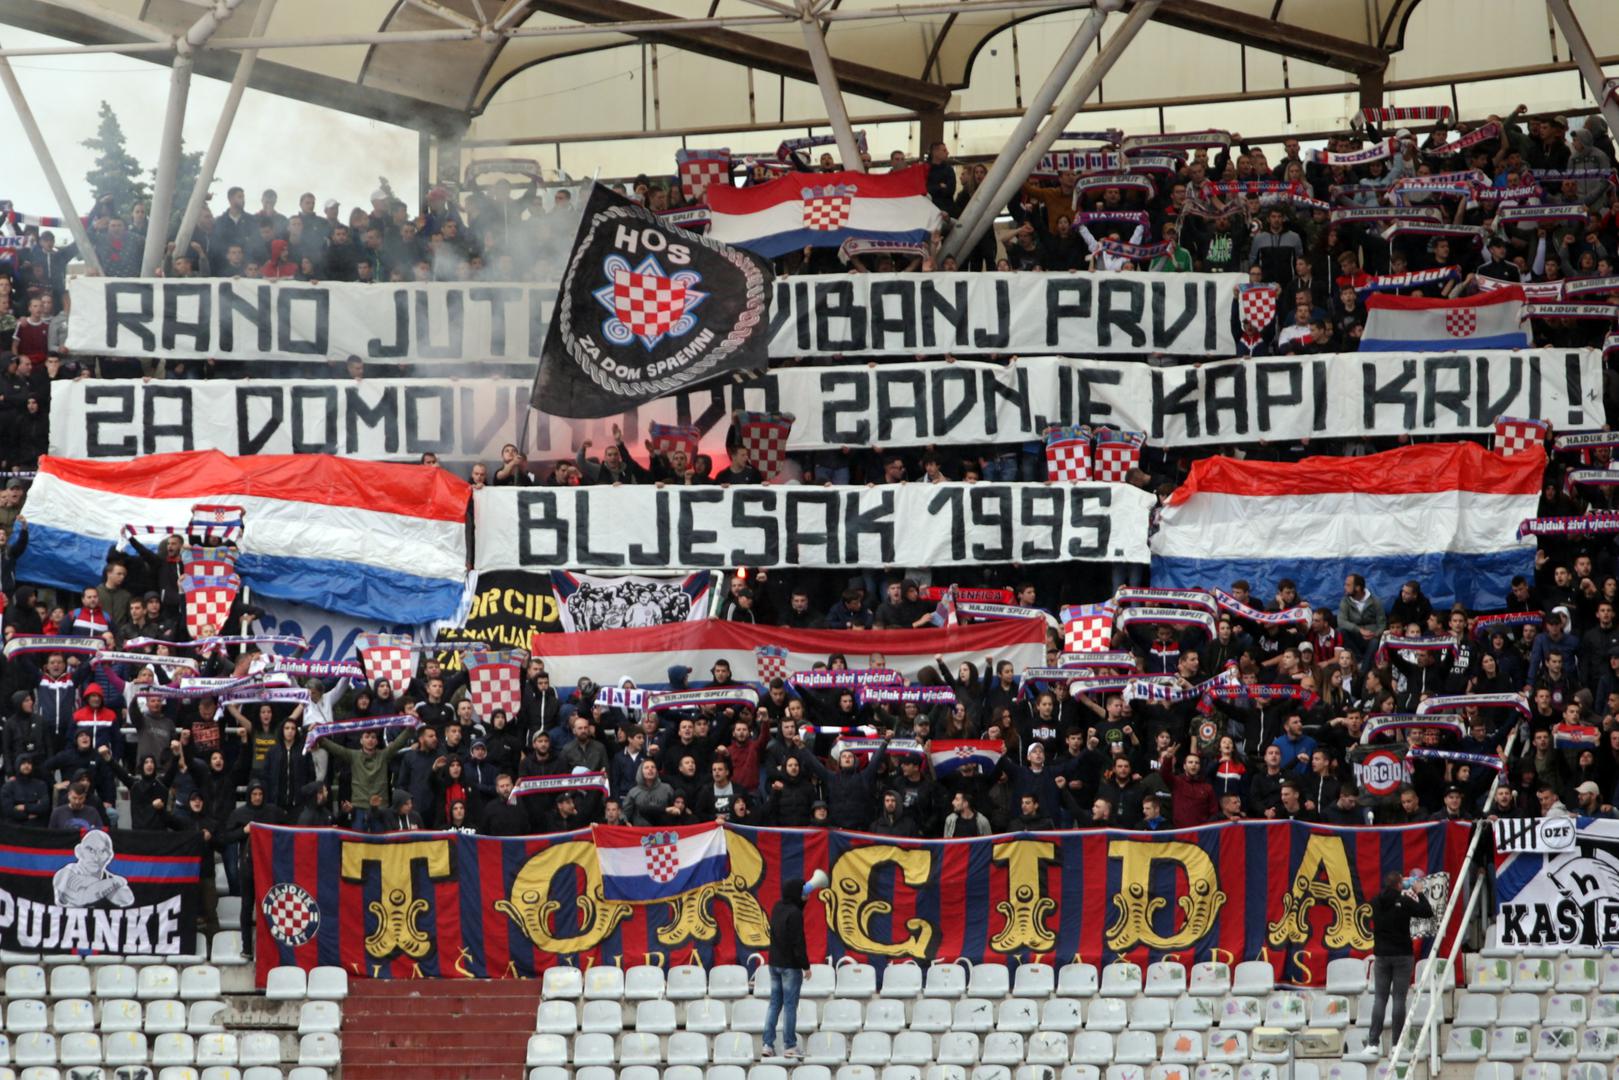 A Torcida se prisjetila akcije Bljesak te donijela transparent na kojem je pisalo "Rano jutro, svibanj prvi za domovinu do zadnje kapi krvi". Navijači Hajduka pjevali su "Moja domovina".